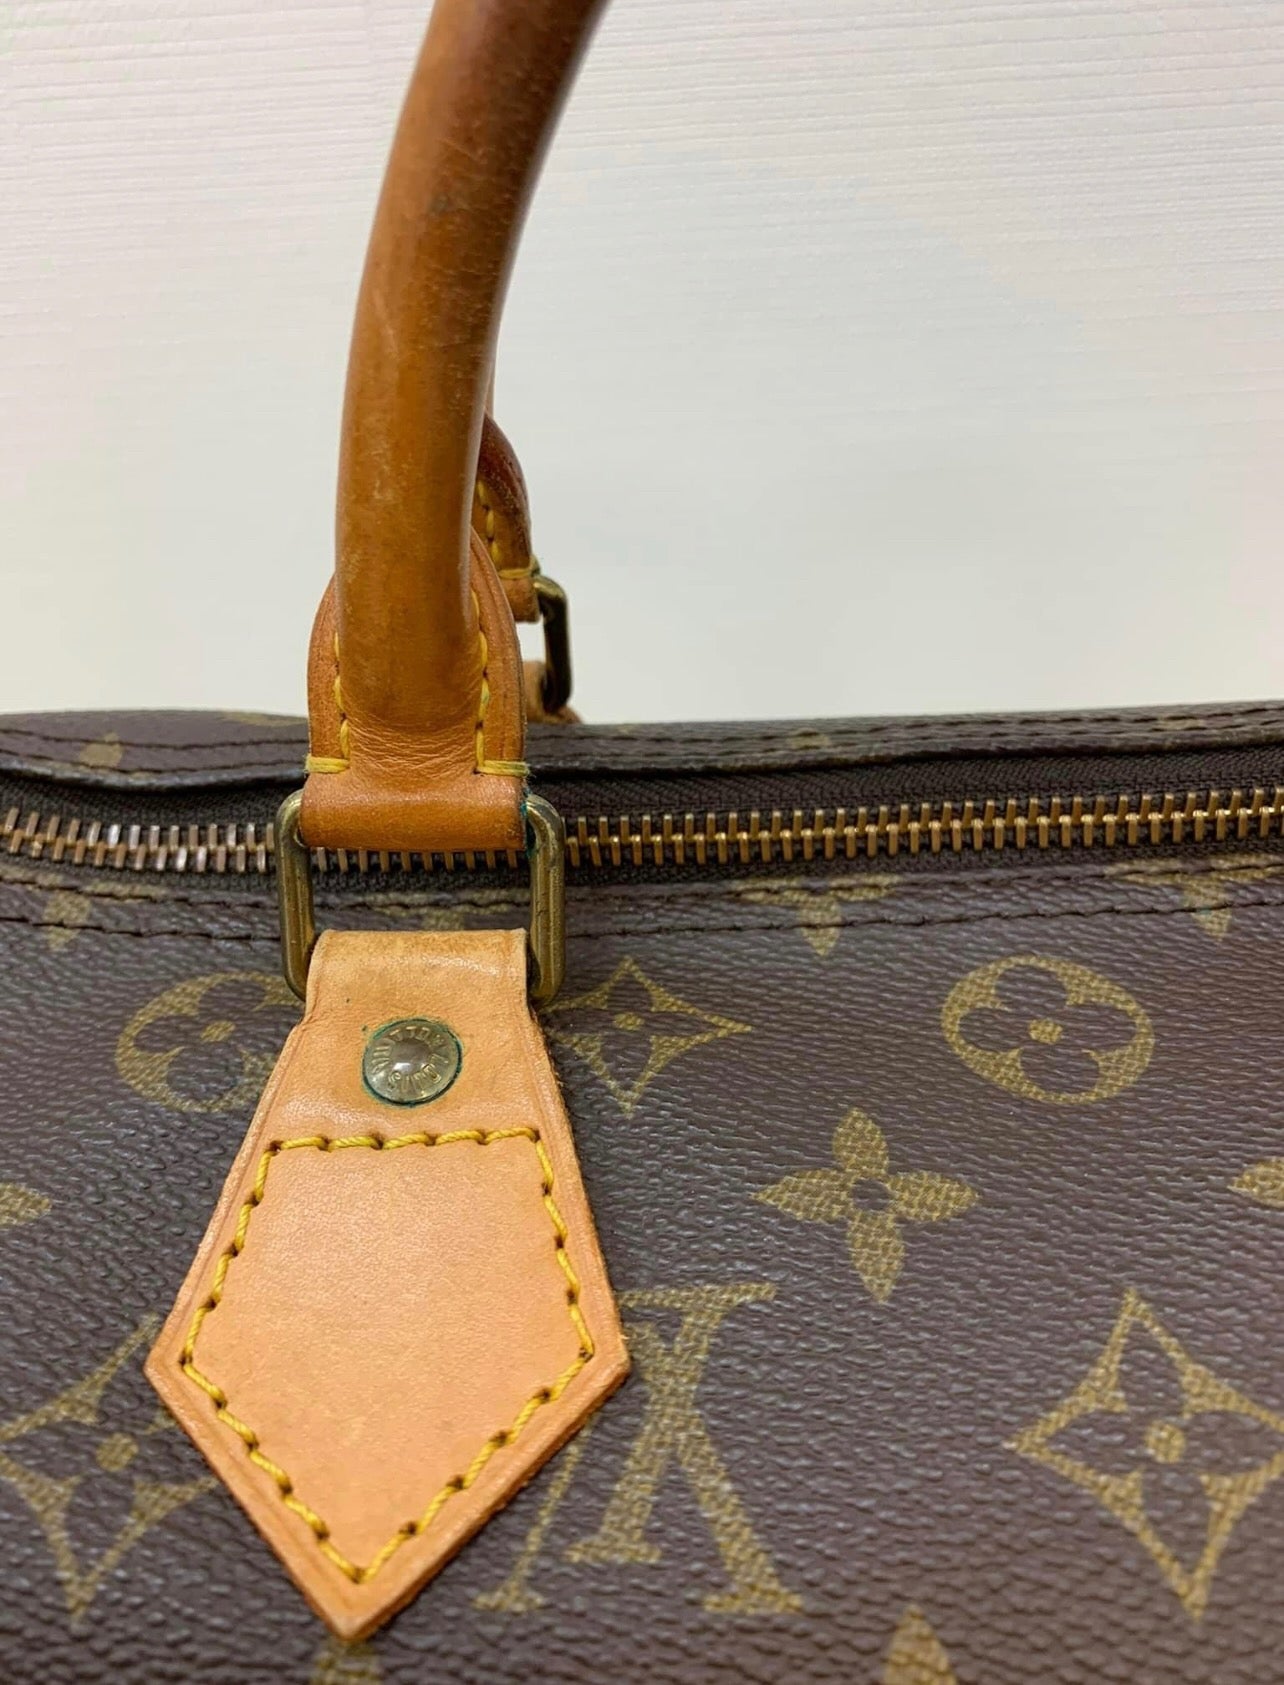 Louis Vuitton, Bags, Louis Vuitton Authentic And Vintage Duffle Bag